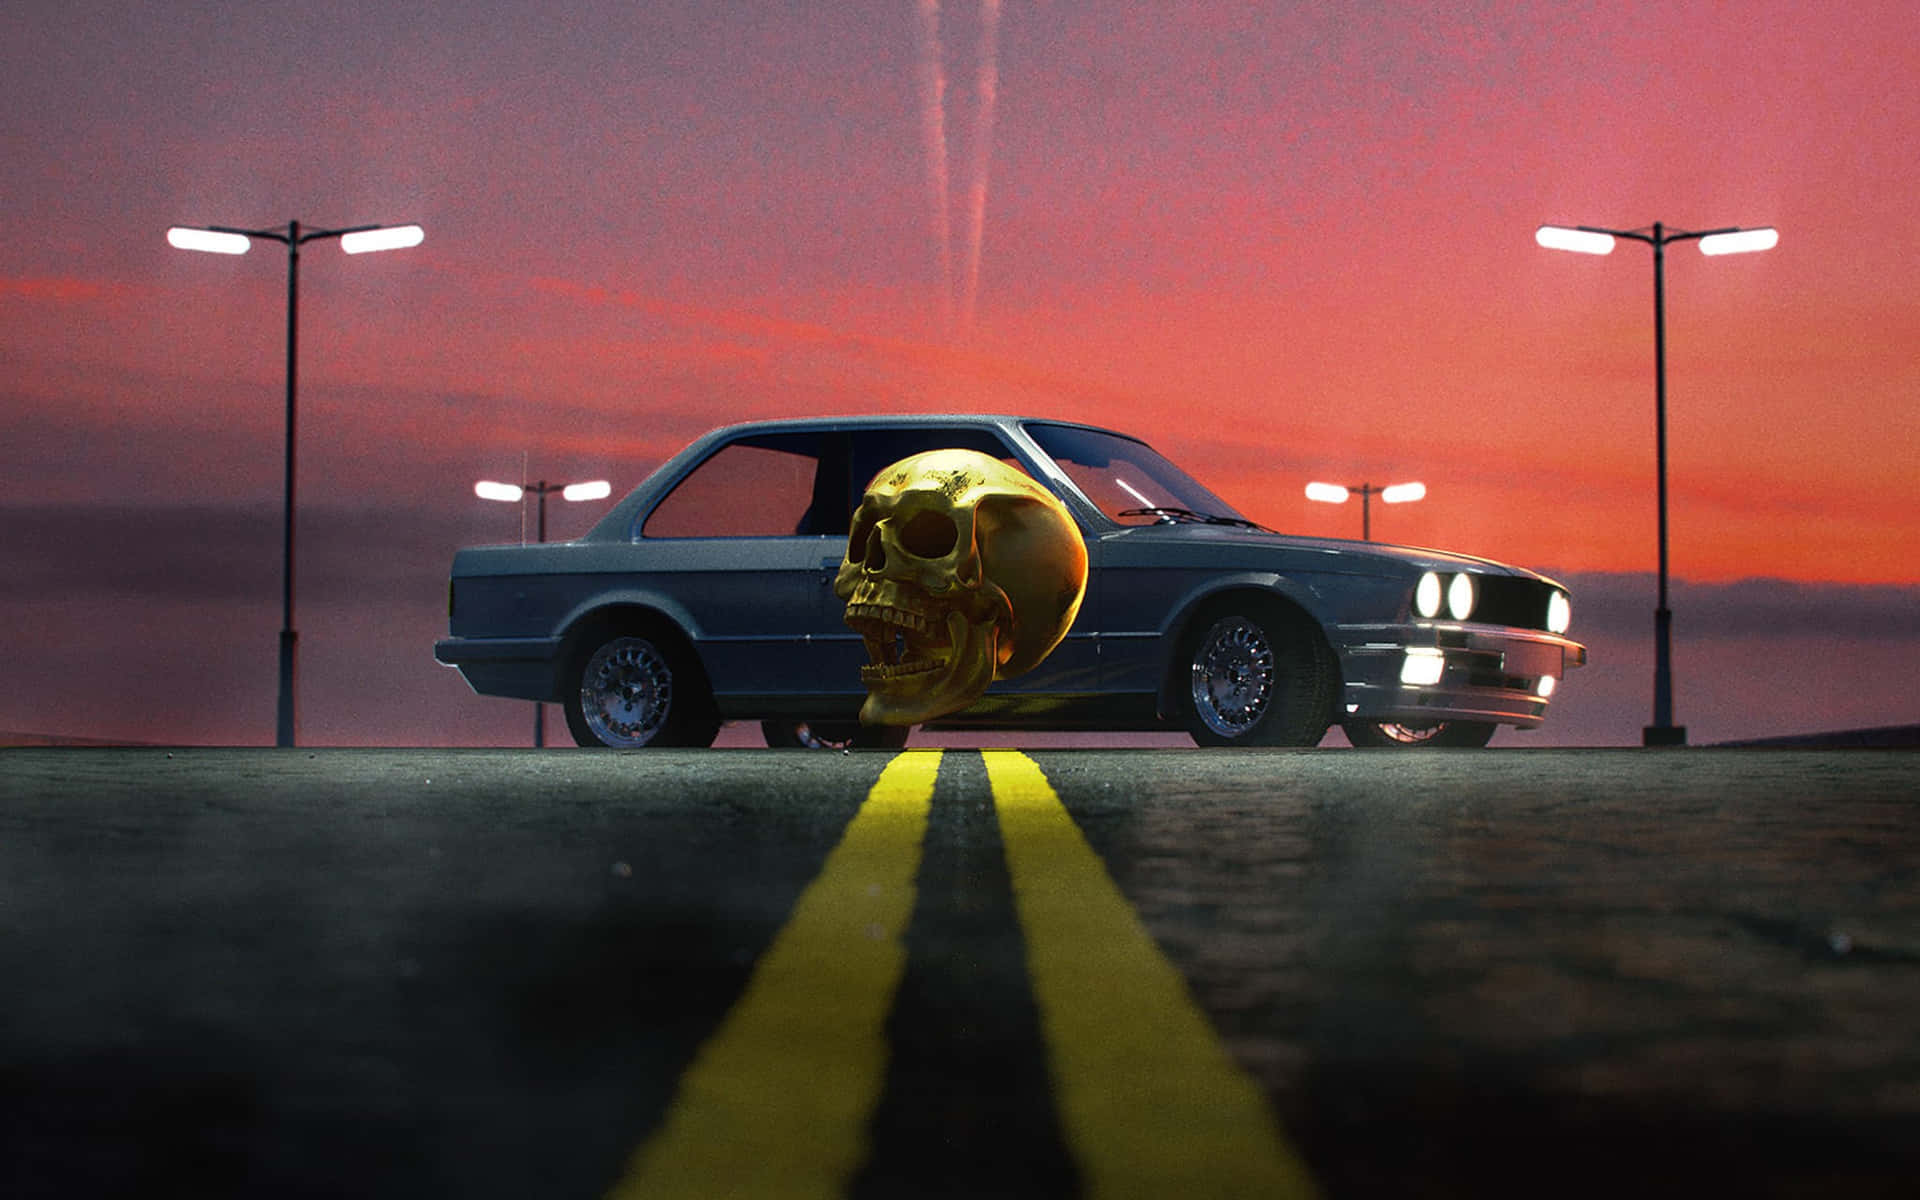 Retro Skull Car Sunset Scene Wallpaper